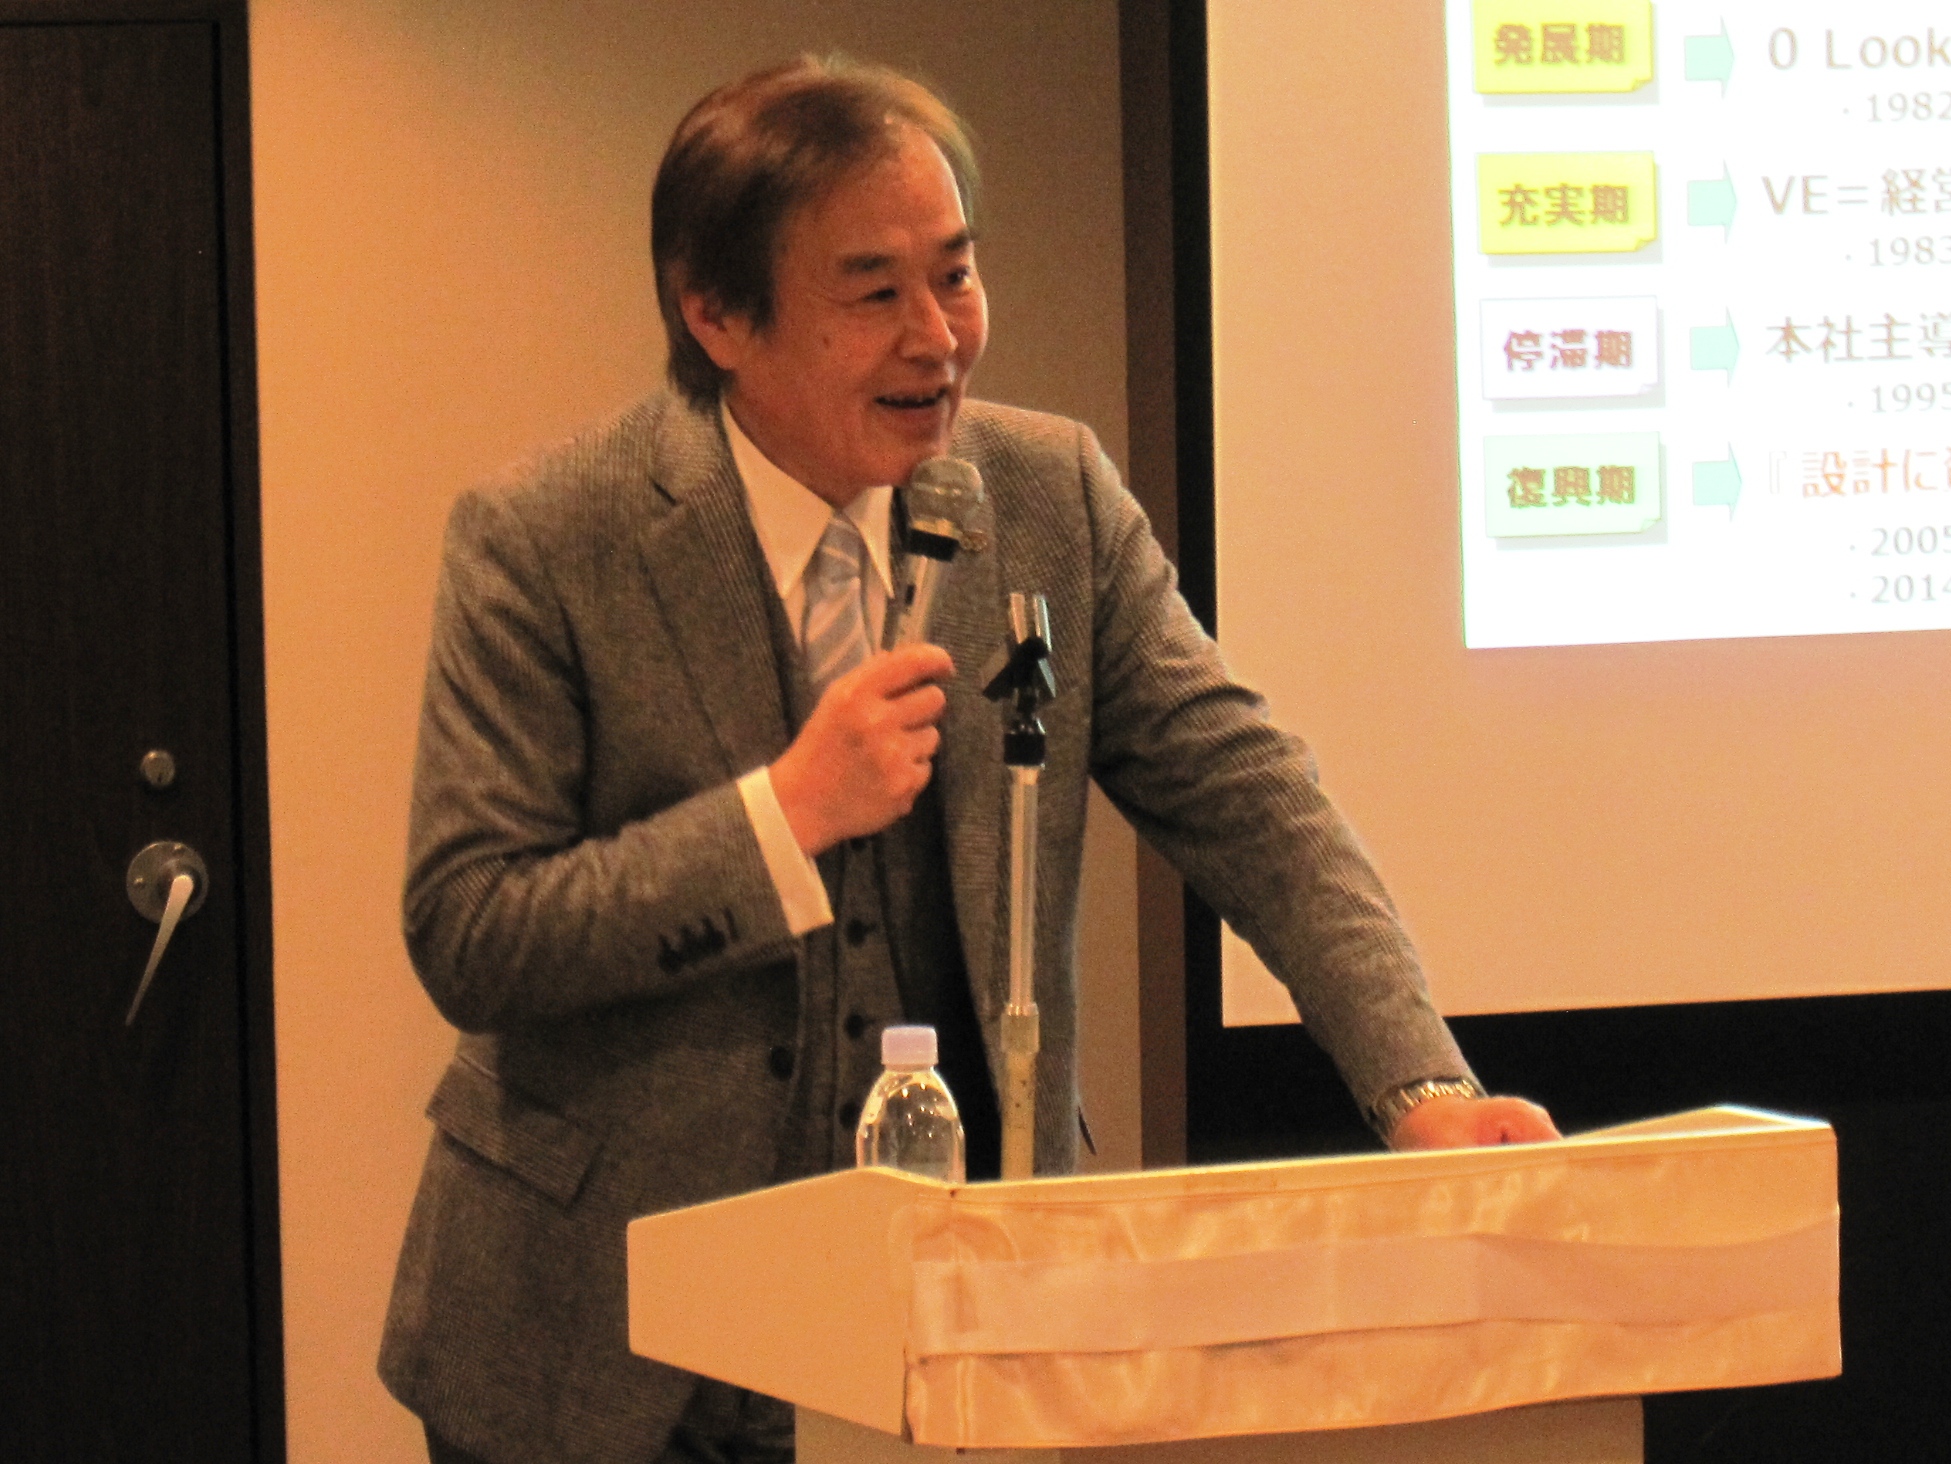 今年度3回目の 経営者フォーラム を開催 公益社団法人日本バリューエンジニアリング協会